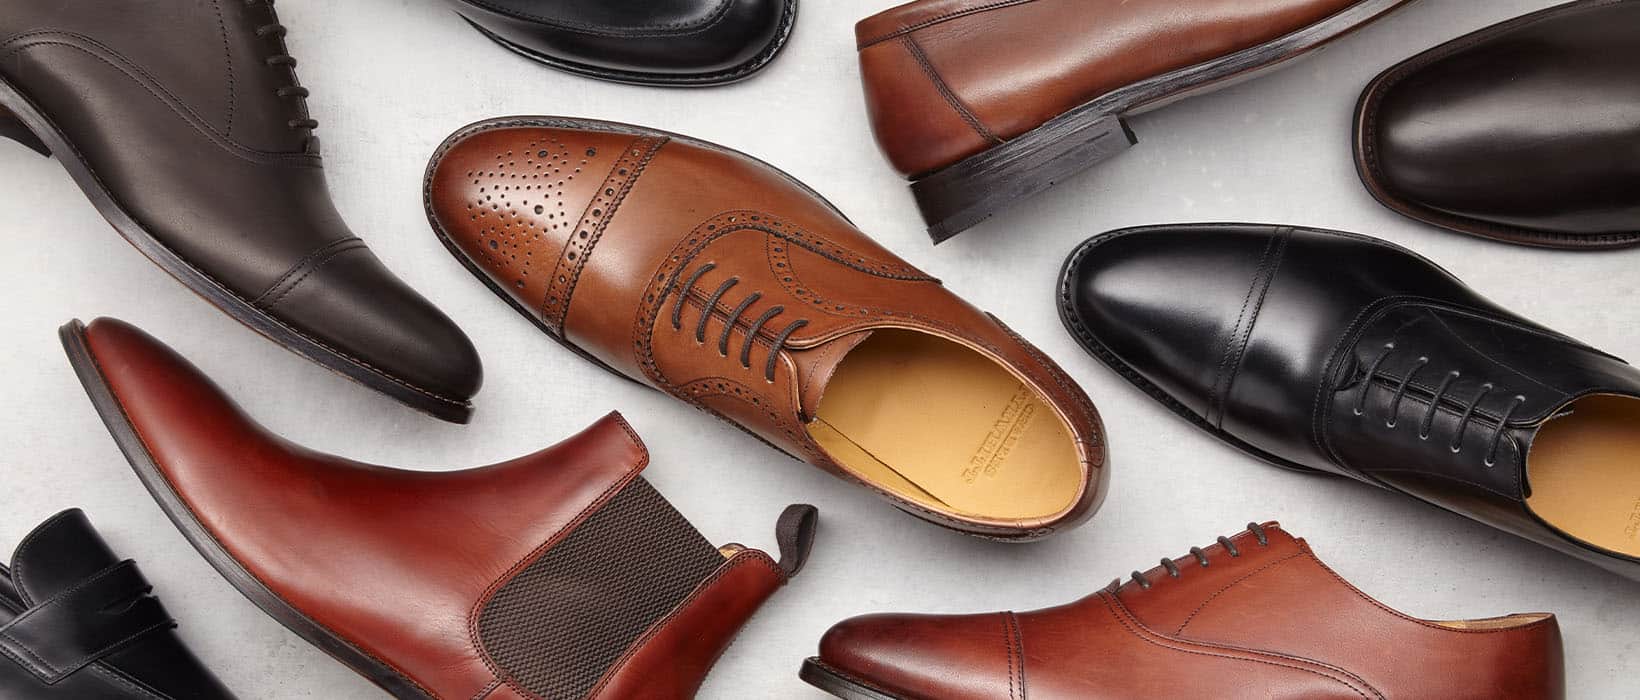 Men's New Season Shoes | Charles Tyrwhitt